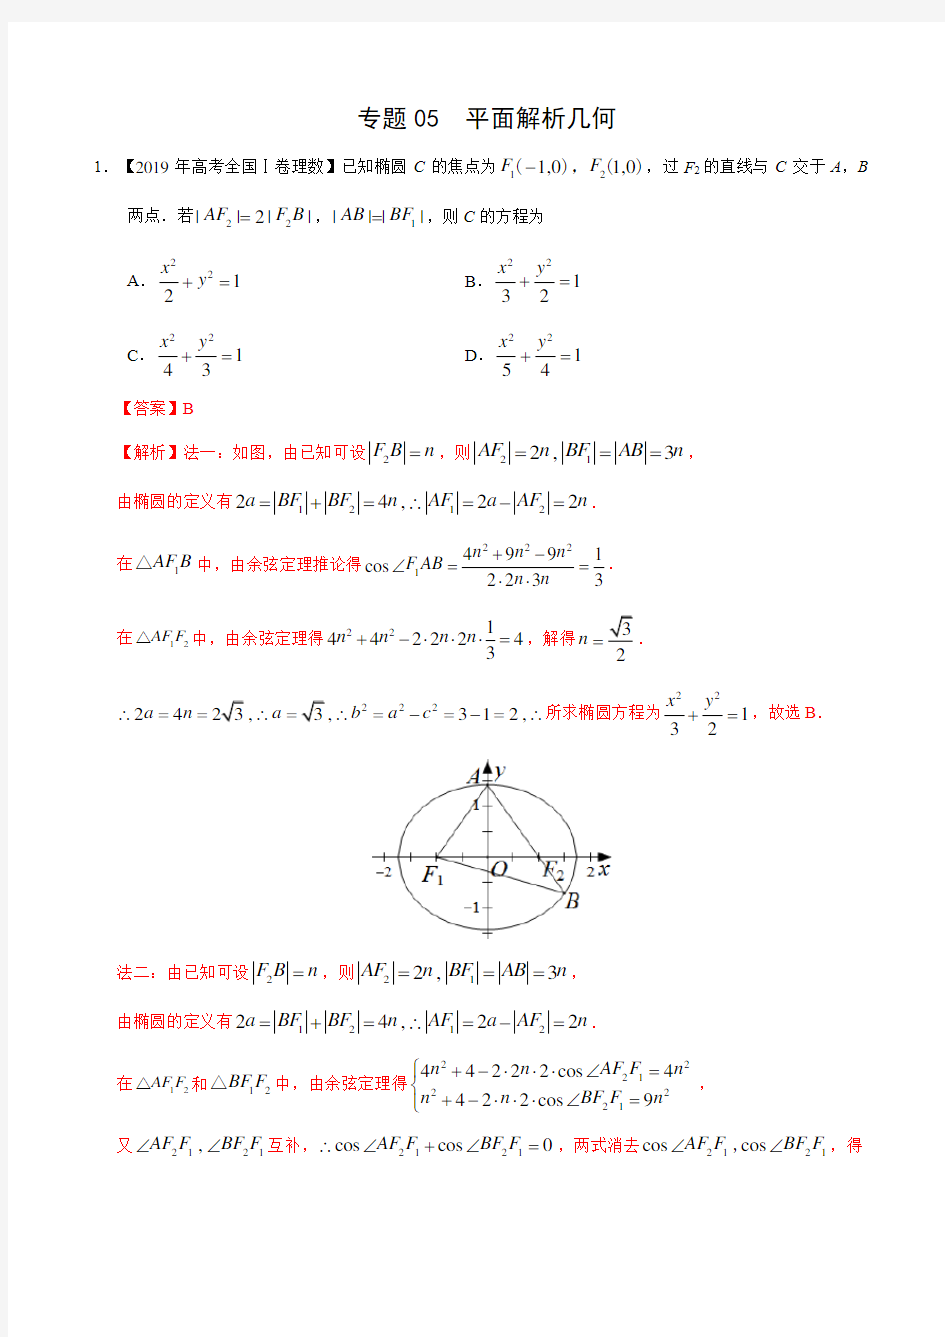  平面解析几何(解析版)